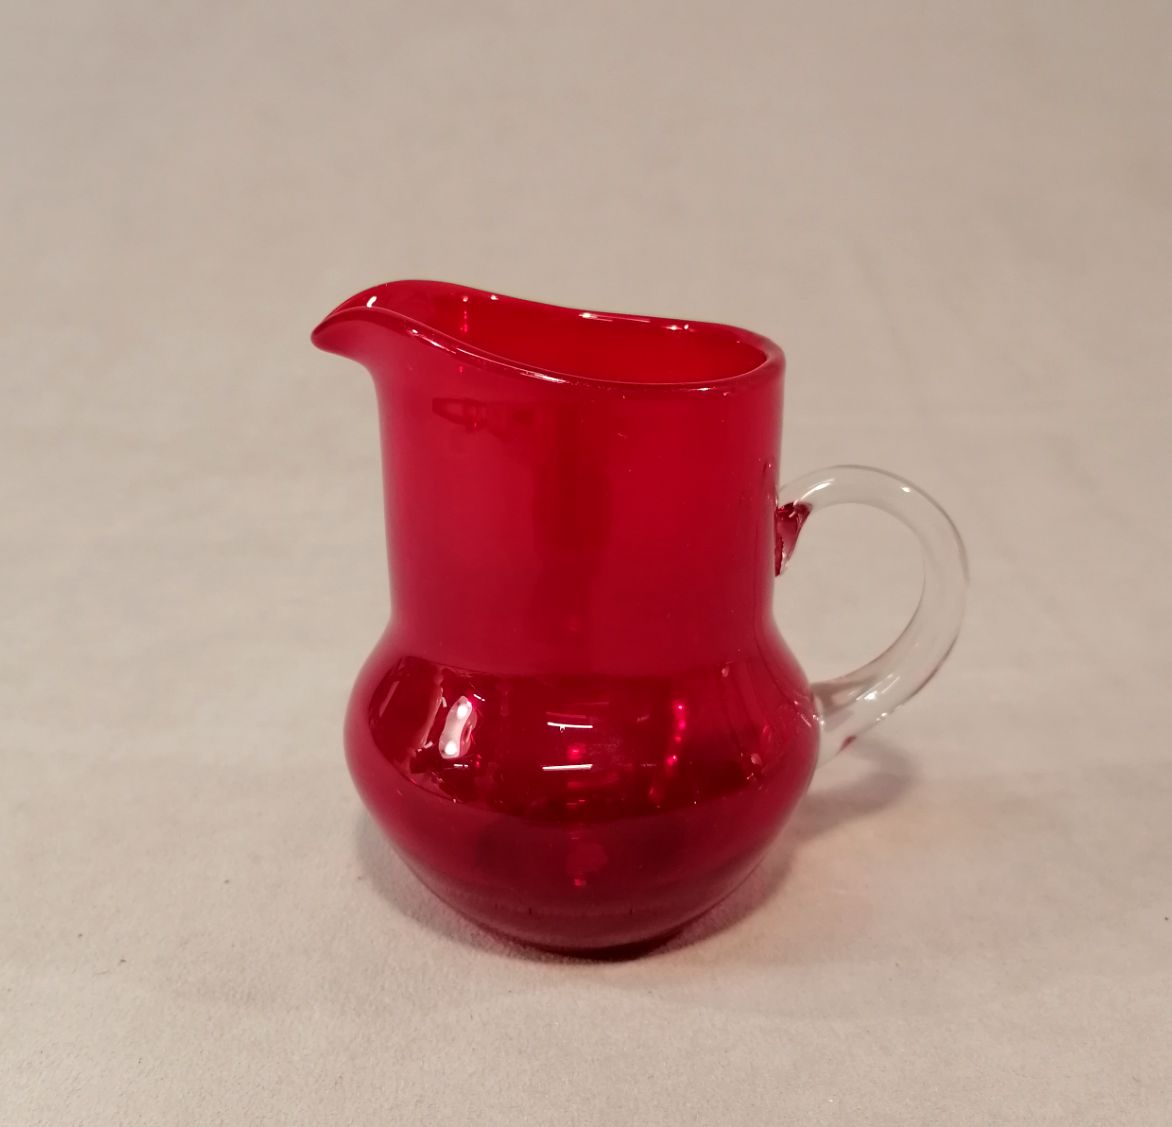 Riihimäen lasi punaunen Pomona kermakko korkeus 10,7cm suunnittelija Helena Tynell hinta 135euroa.